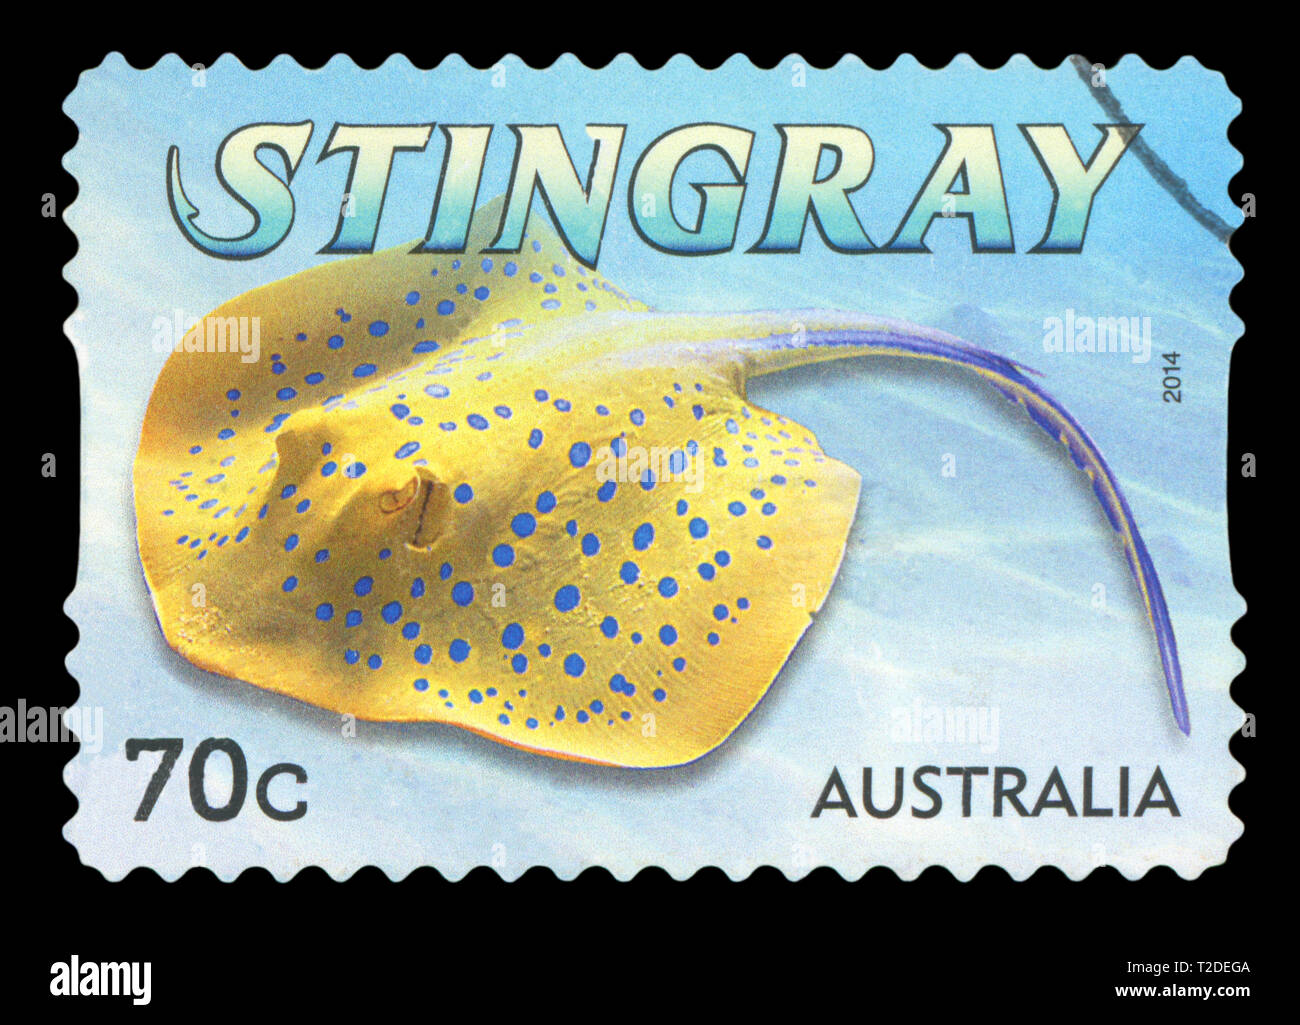 Australien - ca. 2014: einen gebrauchten Briefmarke aus Australien, zeigt eine Abbildung einer Stingray, circa 2014. Stockfoto